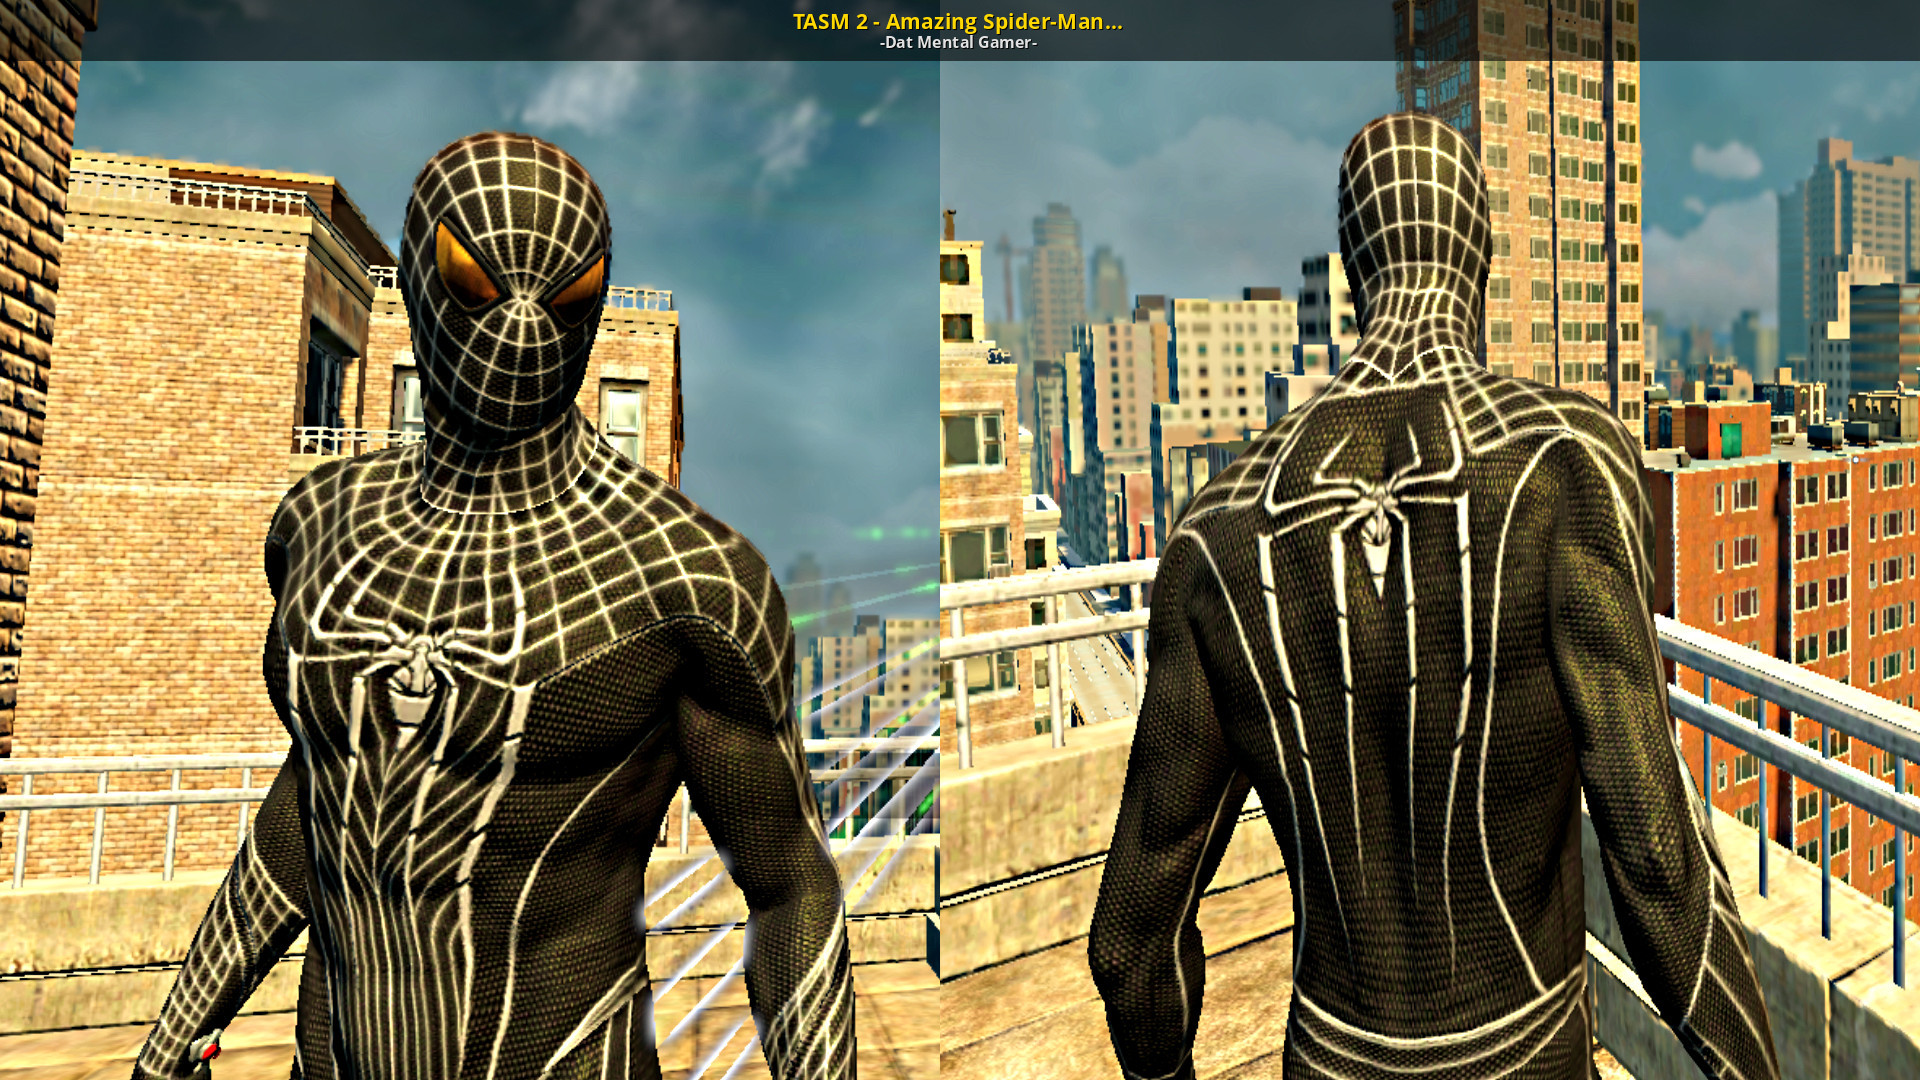 TASM 2 - Amazing Spider-Man (2012) - Black Suit. 